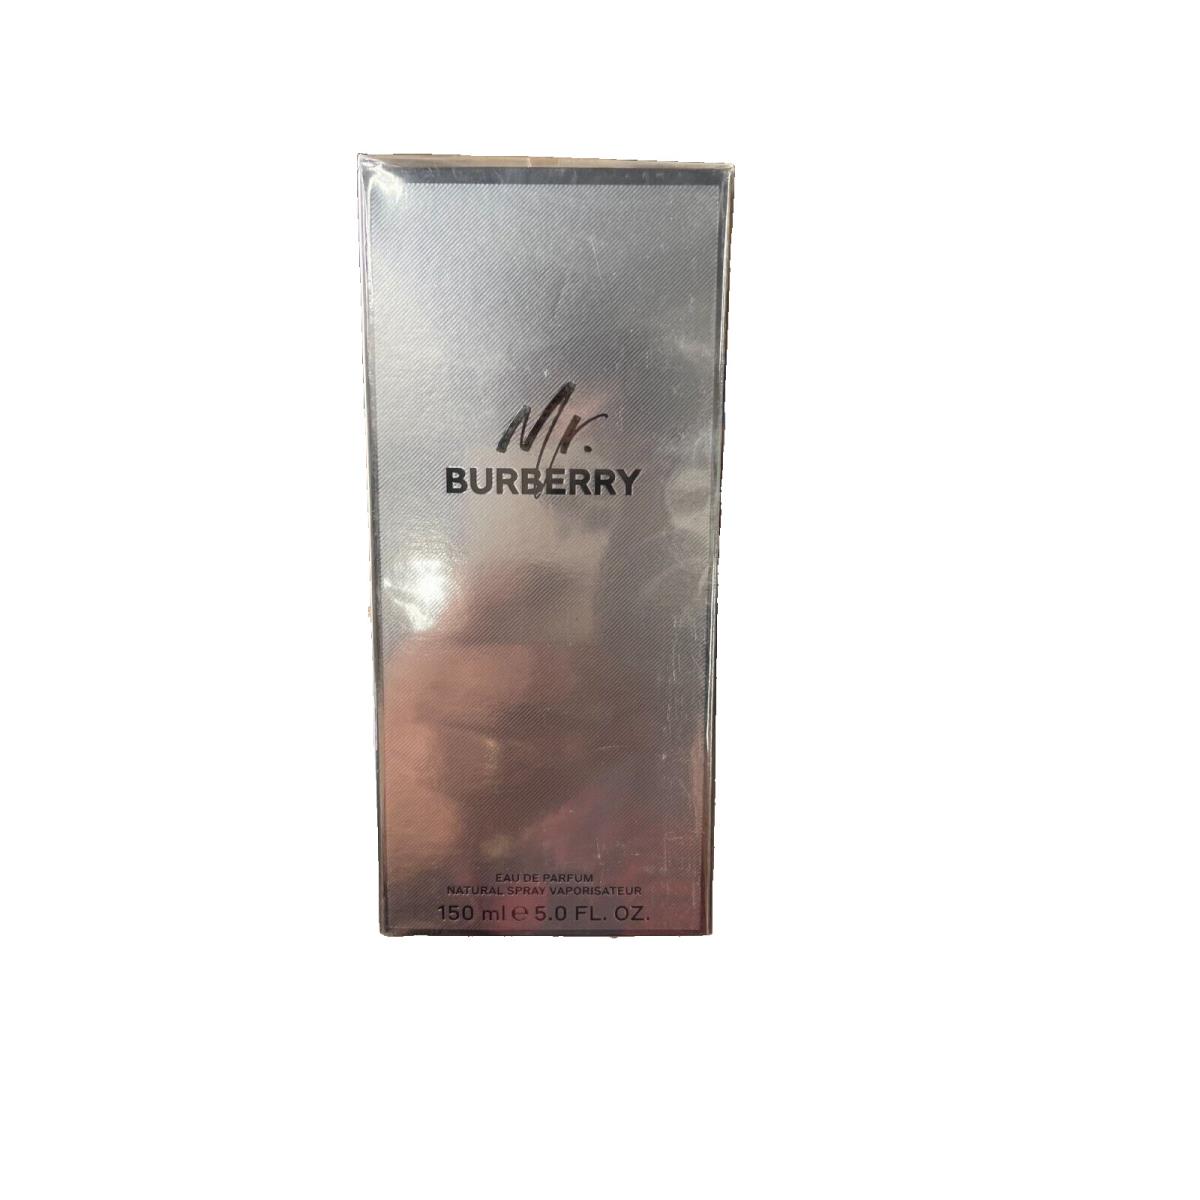 Mr. Burberry by Burberry 5.0 OZ Eau DE Parfum Spray For Men